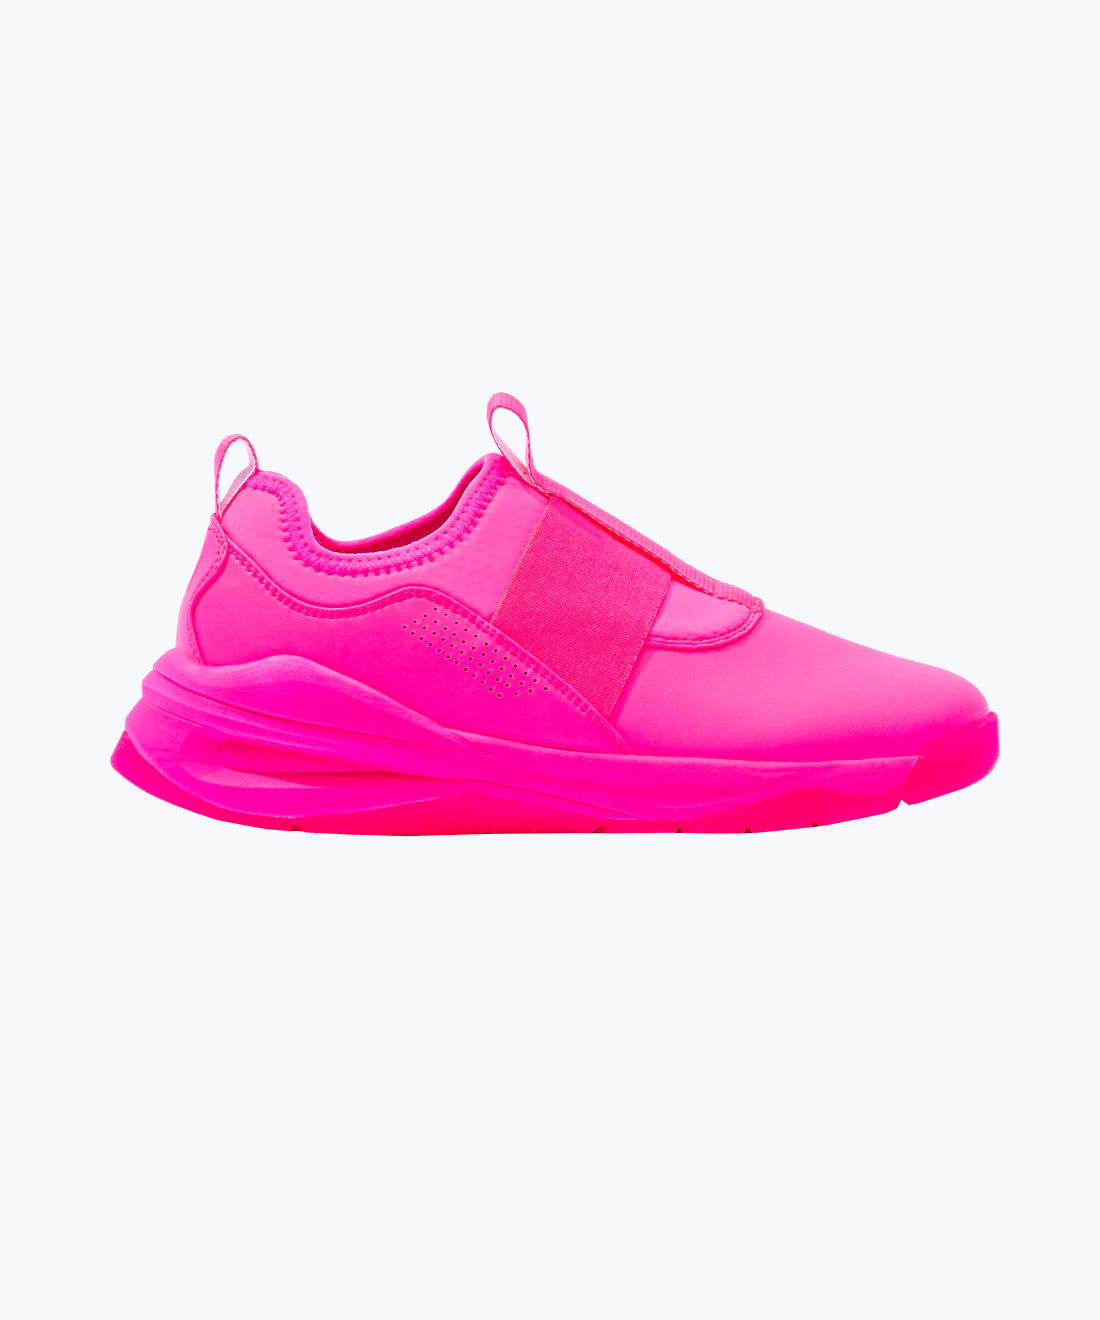 Pink slip-on sneakers